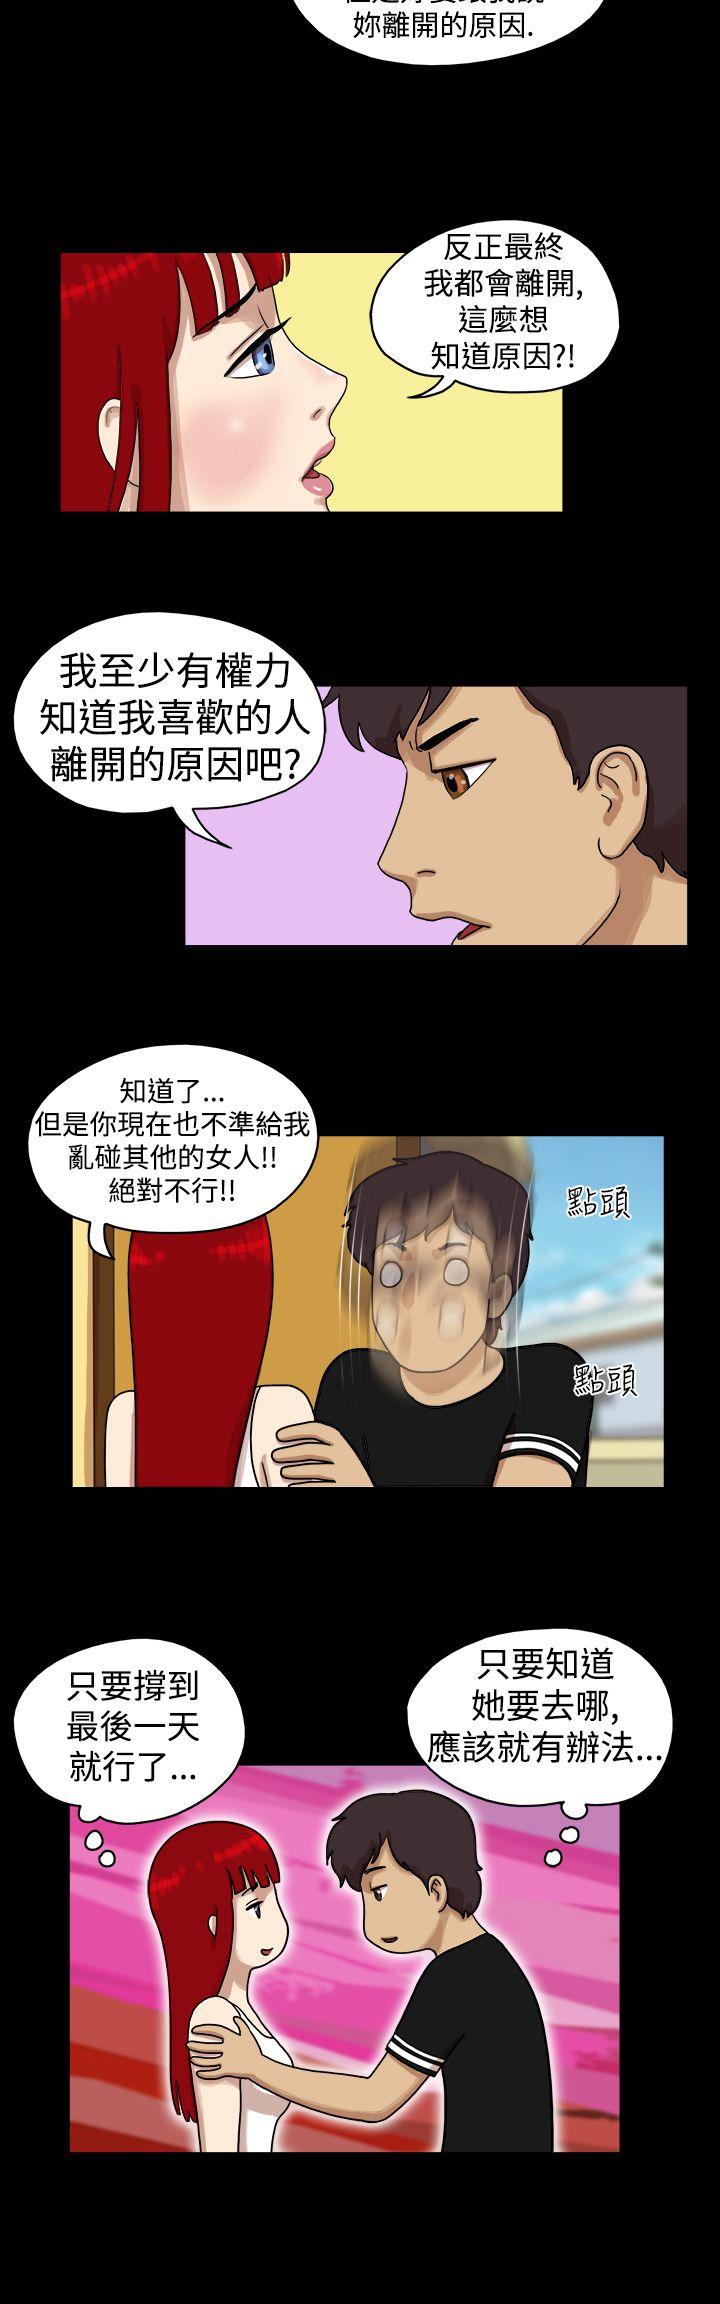 韩国污漫画 17種性幻想第一季 第24话 3